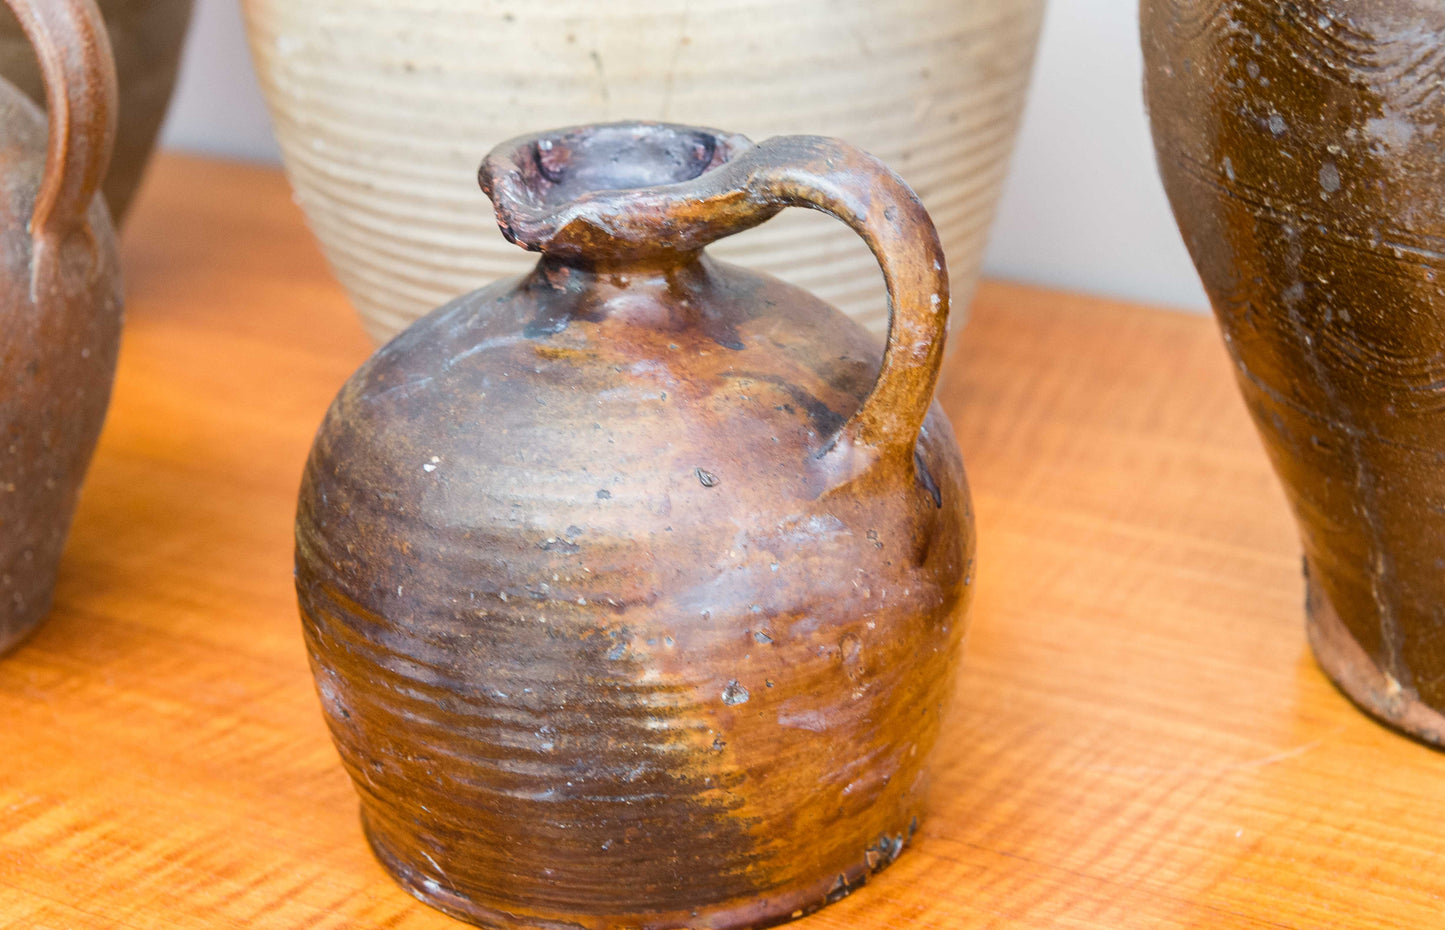 Five Antique Salt Glaze Stoneware Flagon,Jugs